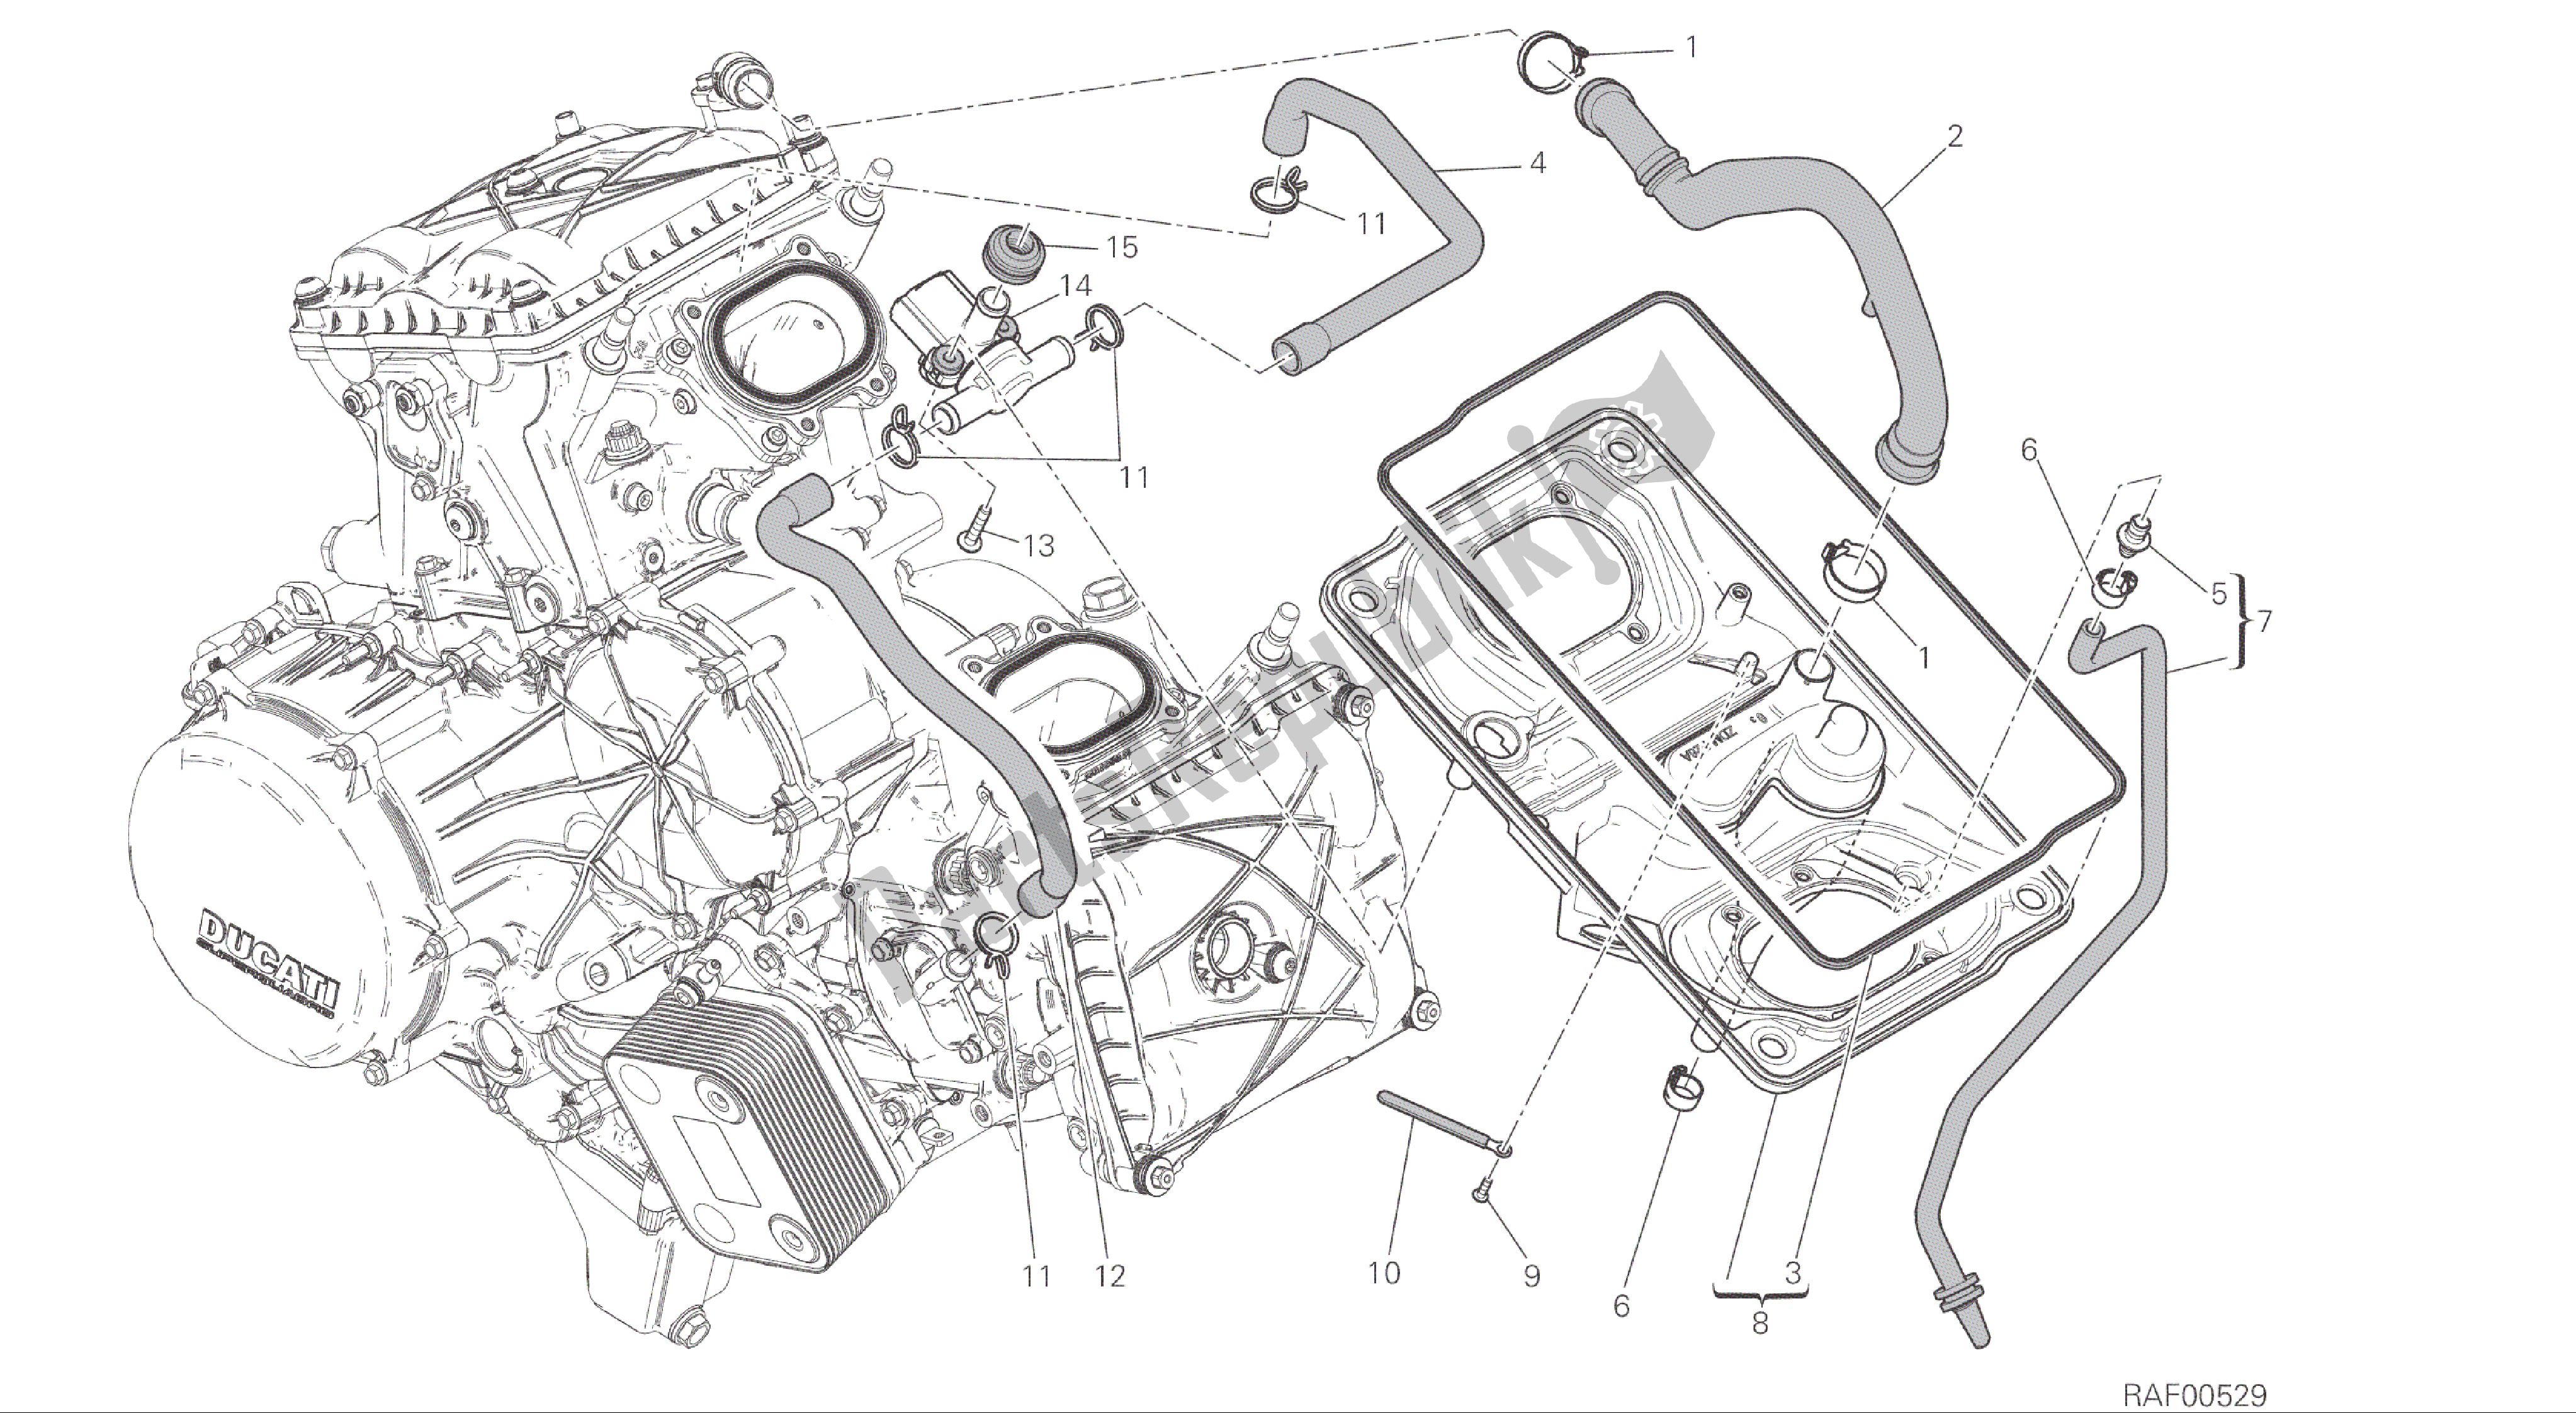 Alle onderdelen voor de Tekening 029 - Luchtinlaat - Olie-ontluchter [mod: 1299; Xst: Aus, Eur, Fra, Jap, Twn] Groepsframe van de Ducati Panigale ABS 1299 2016